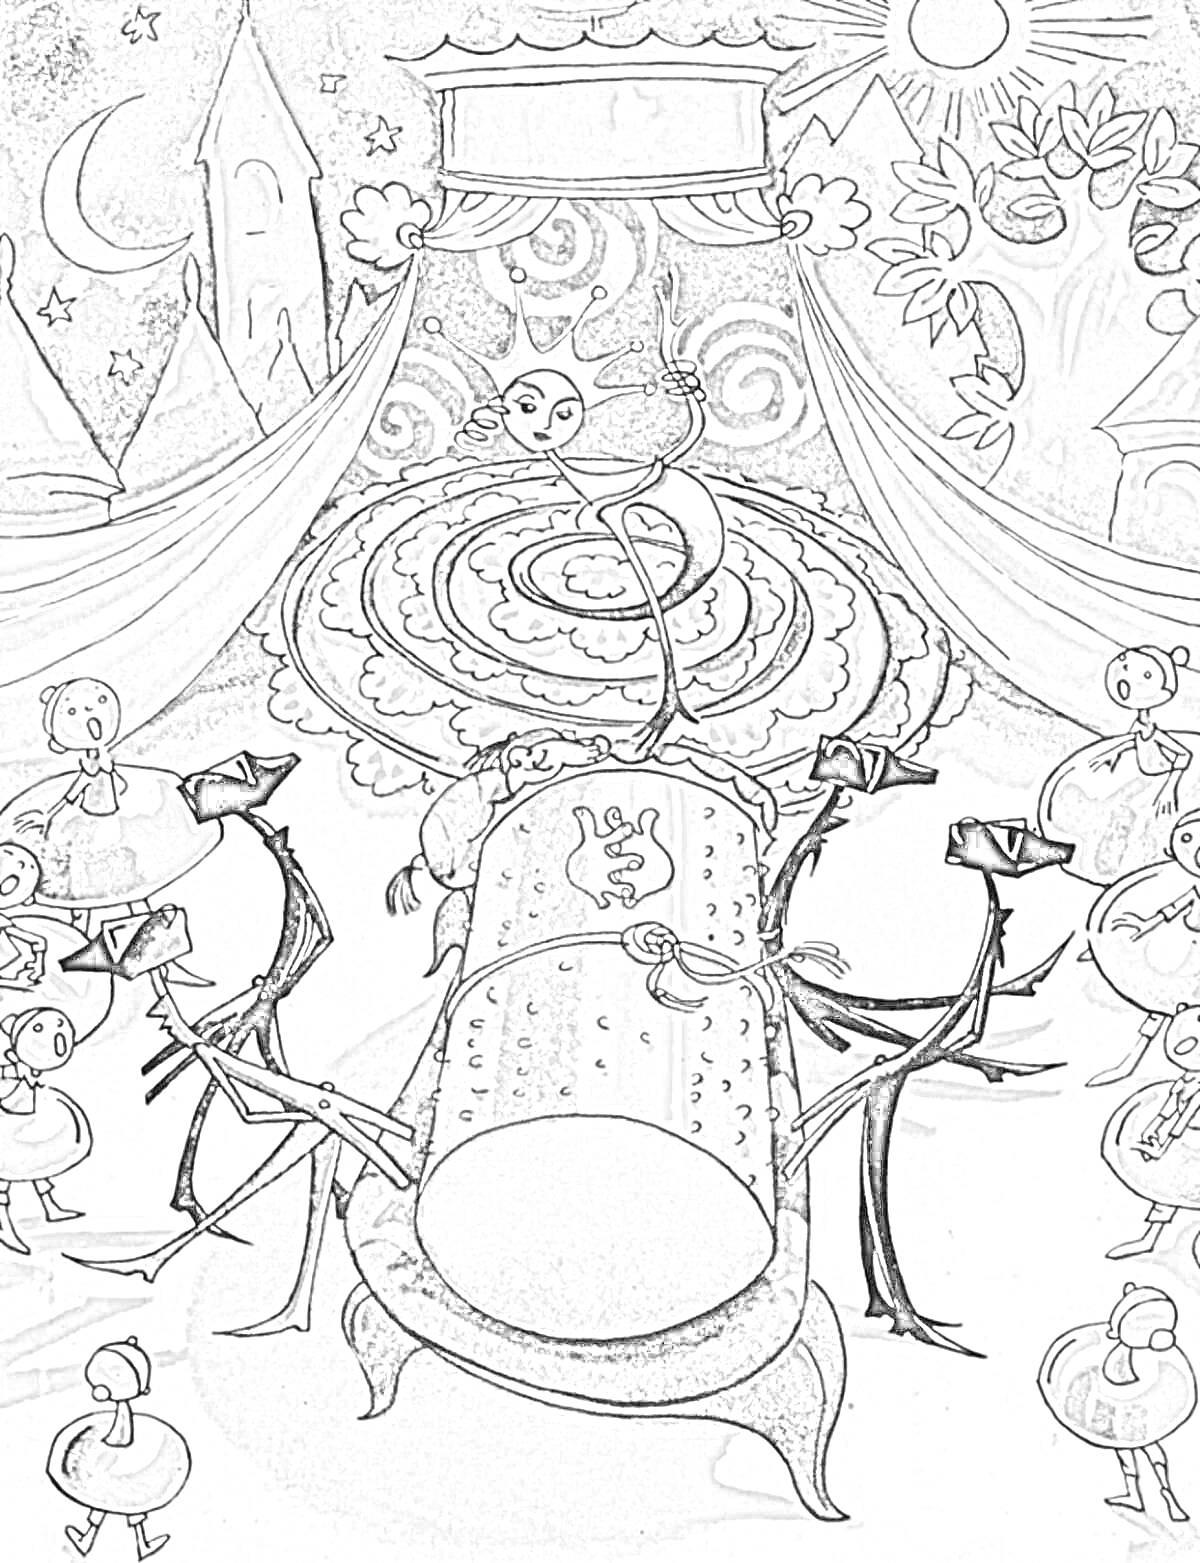 На раскраске изображено: Городок в табакерке, Шторы, Замок, Солнце, Спираль, Барабан